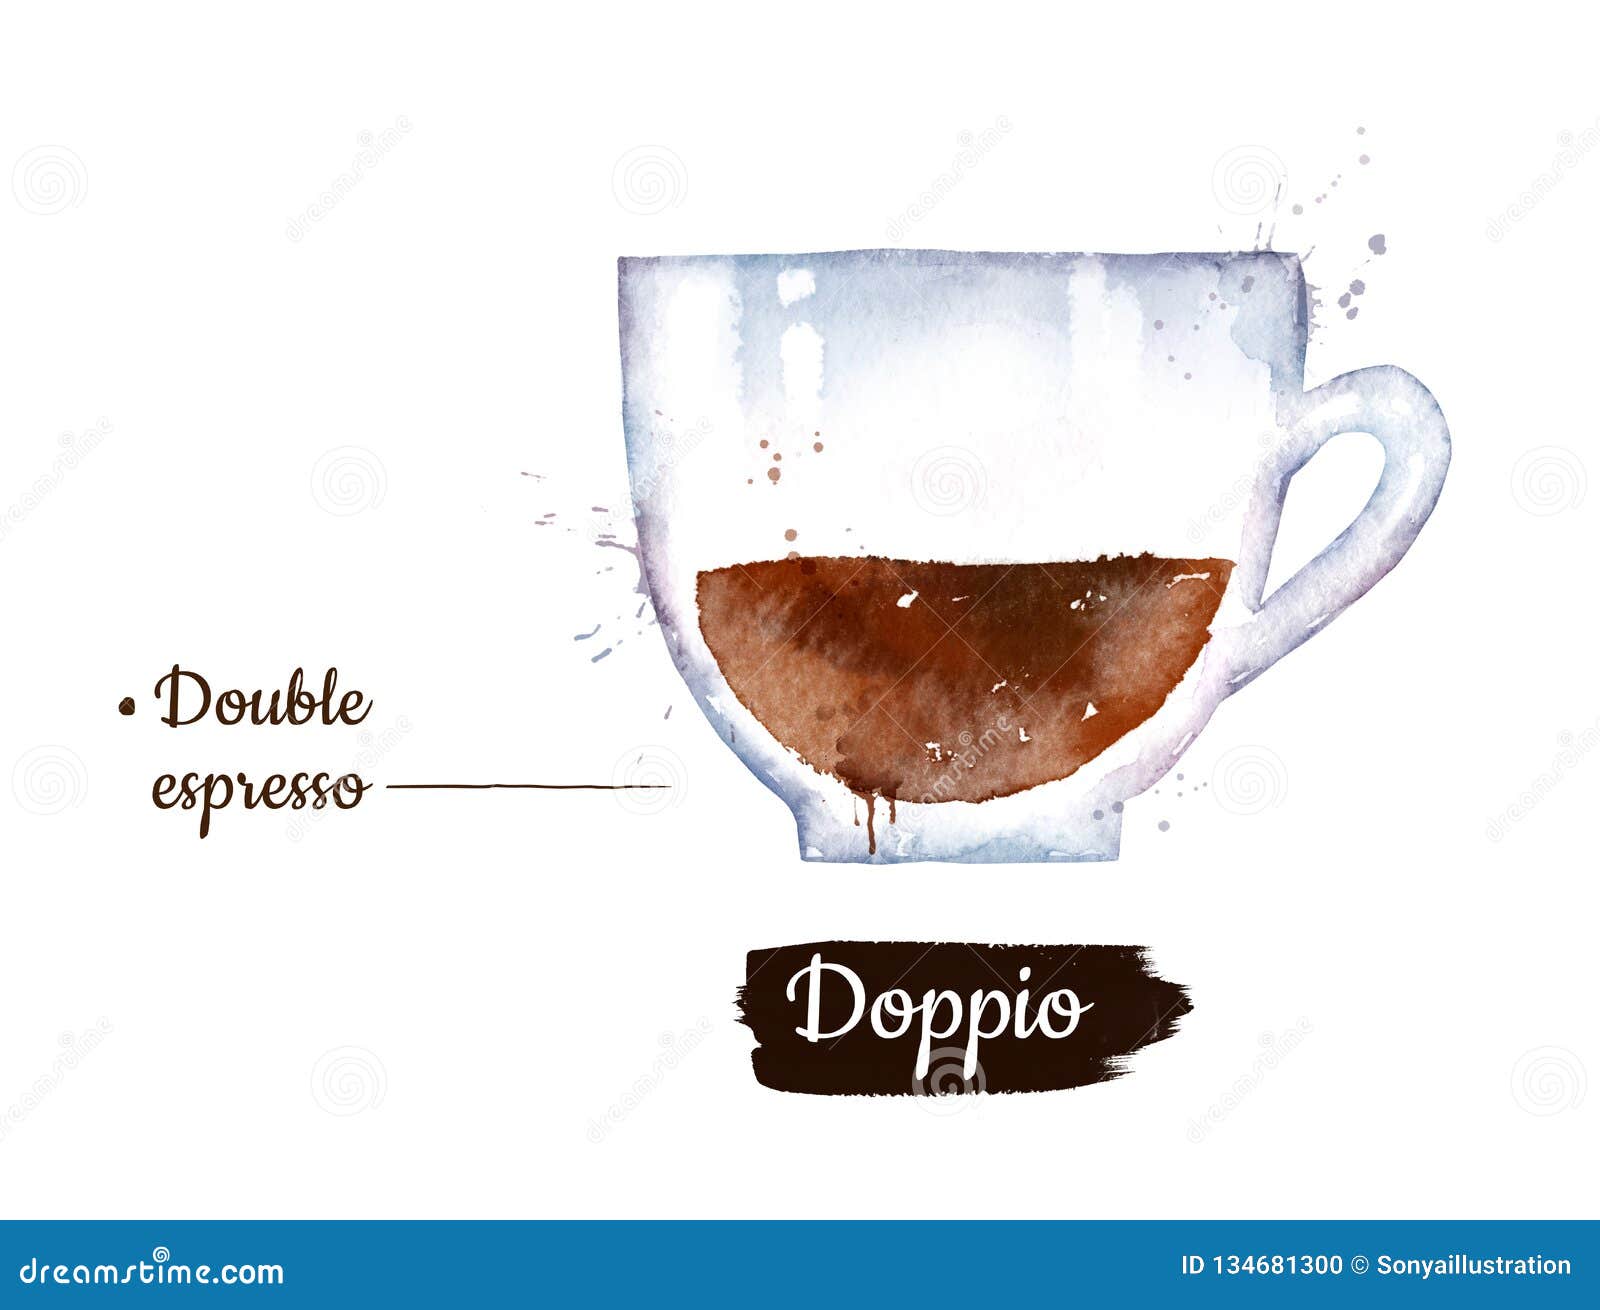 watercolor  of doppio coffee